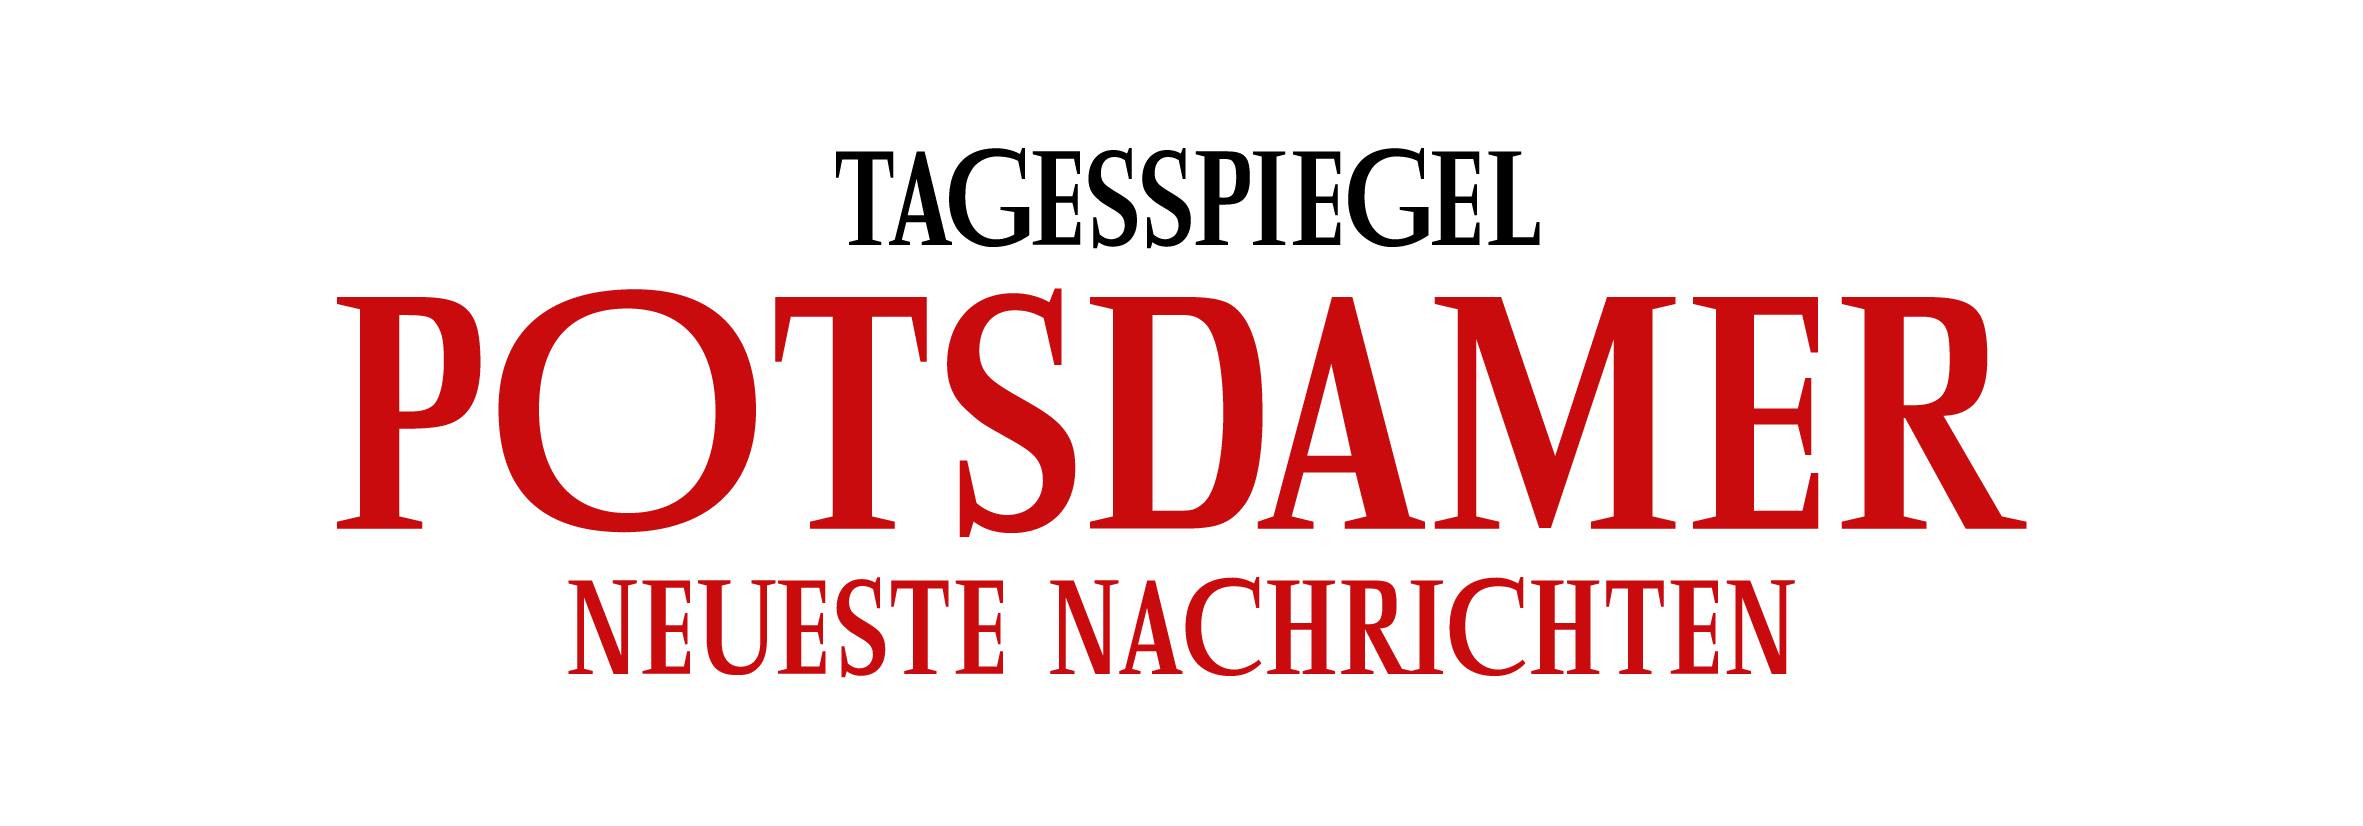 Tagesspiegel - Potsdamer Neuste Nachrichten